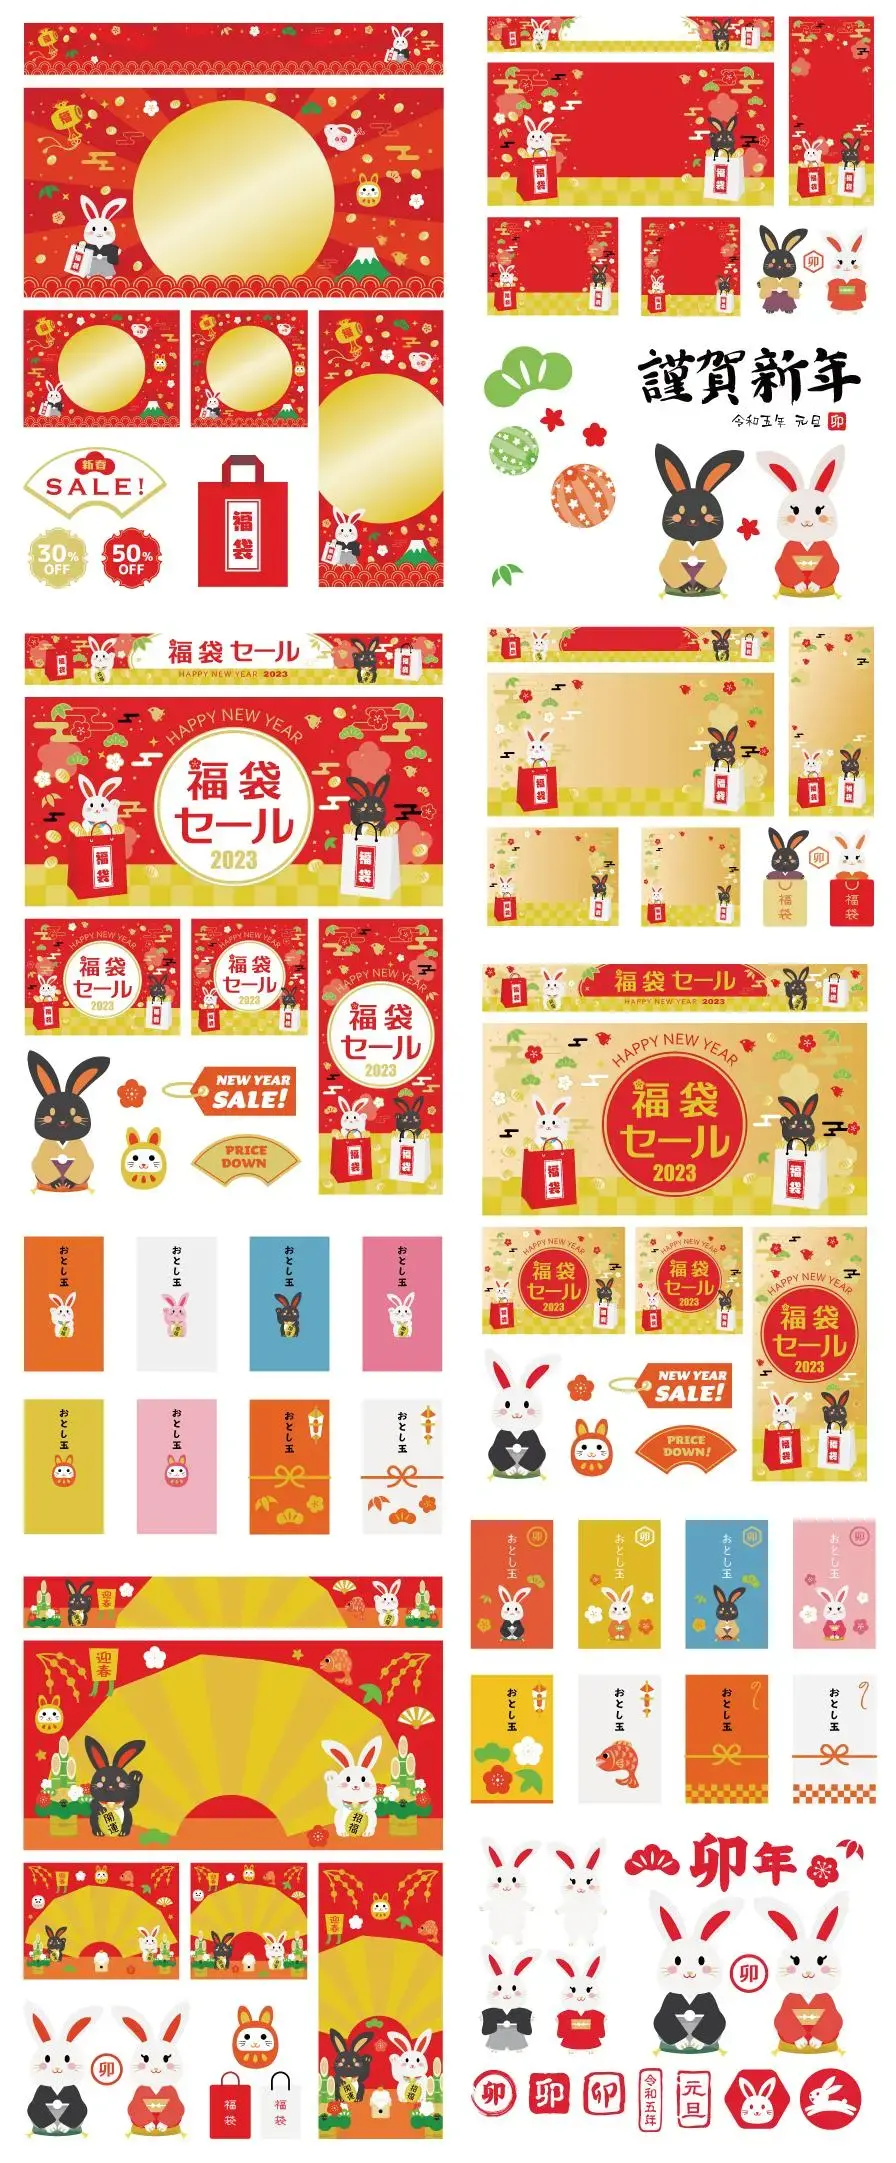 24款2023新年春节兔年可爱日式日系卡通福袋活动海报插画AI矢量图素材-爱设计爱分享c